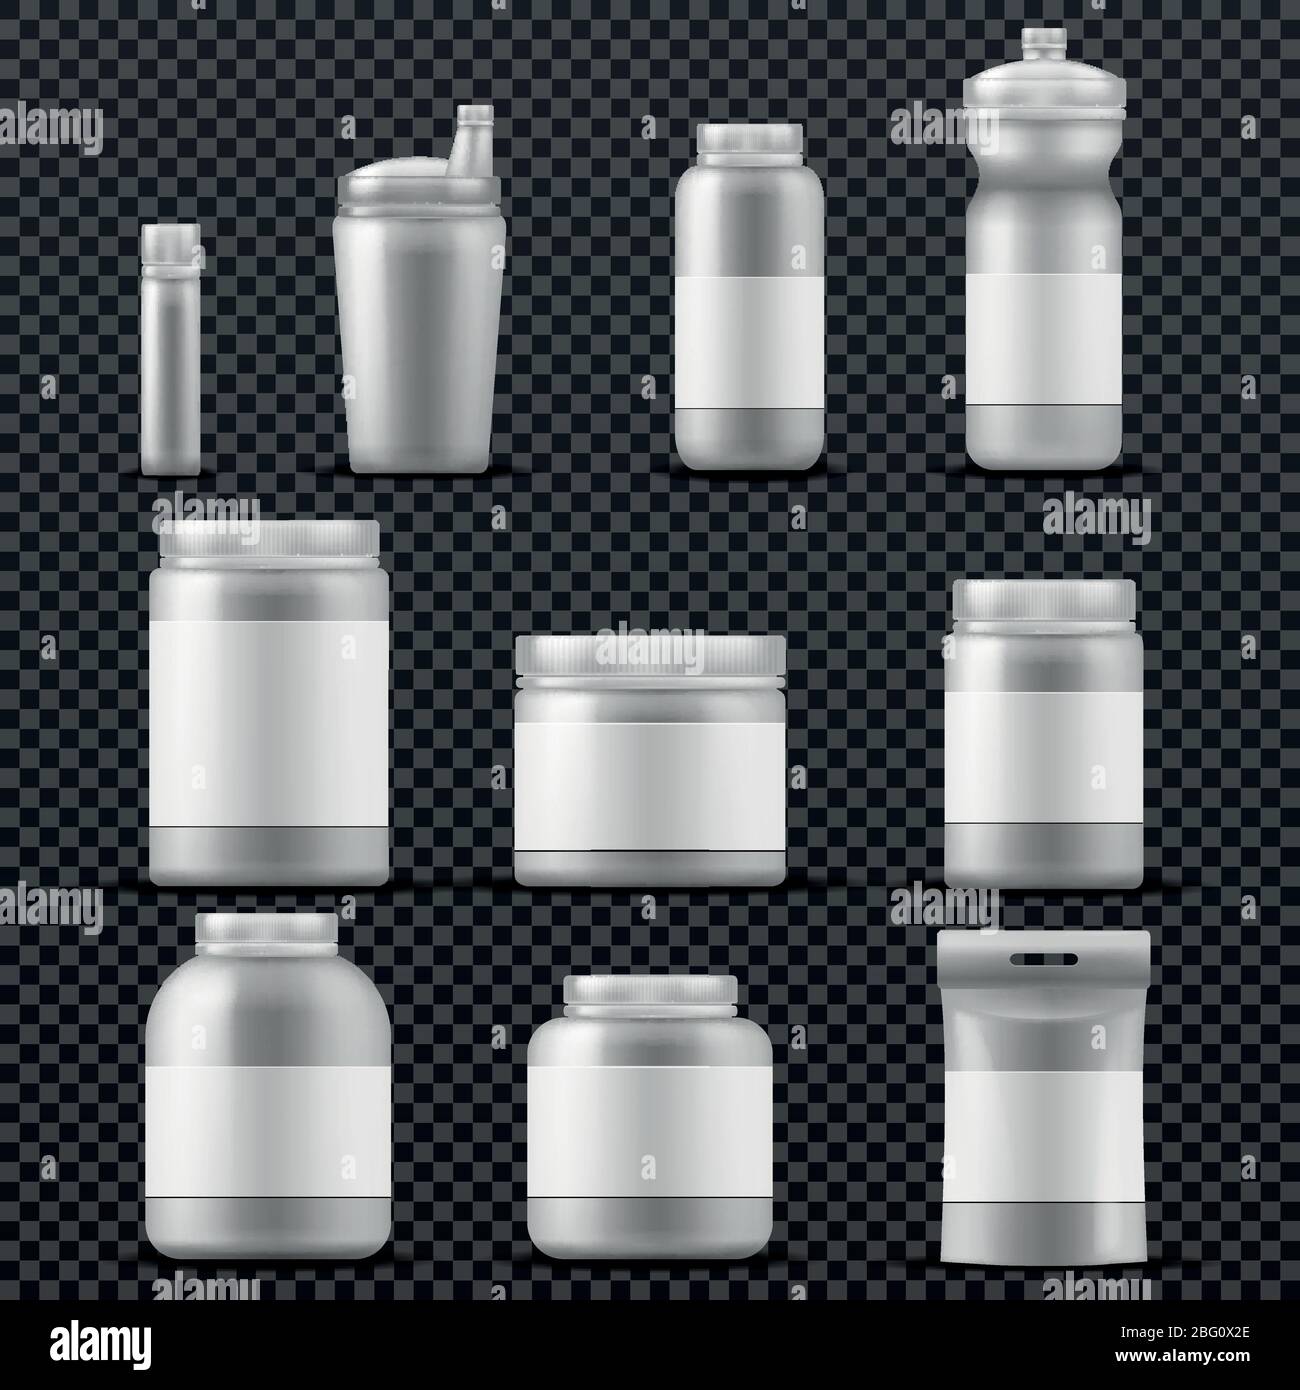 Sport Ergänzung Kunststoff-Jar-Behälter für Getränke und Pulver. Vektorvorlagen isoliert. Sportnahrung Verpackung, Behälter mit Sport Ergänzung f Stock Vektor